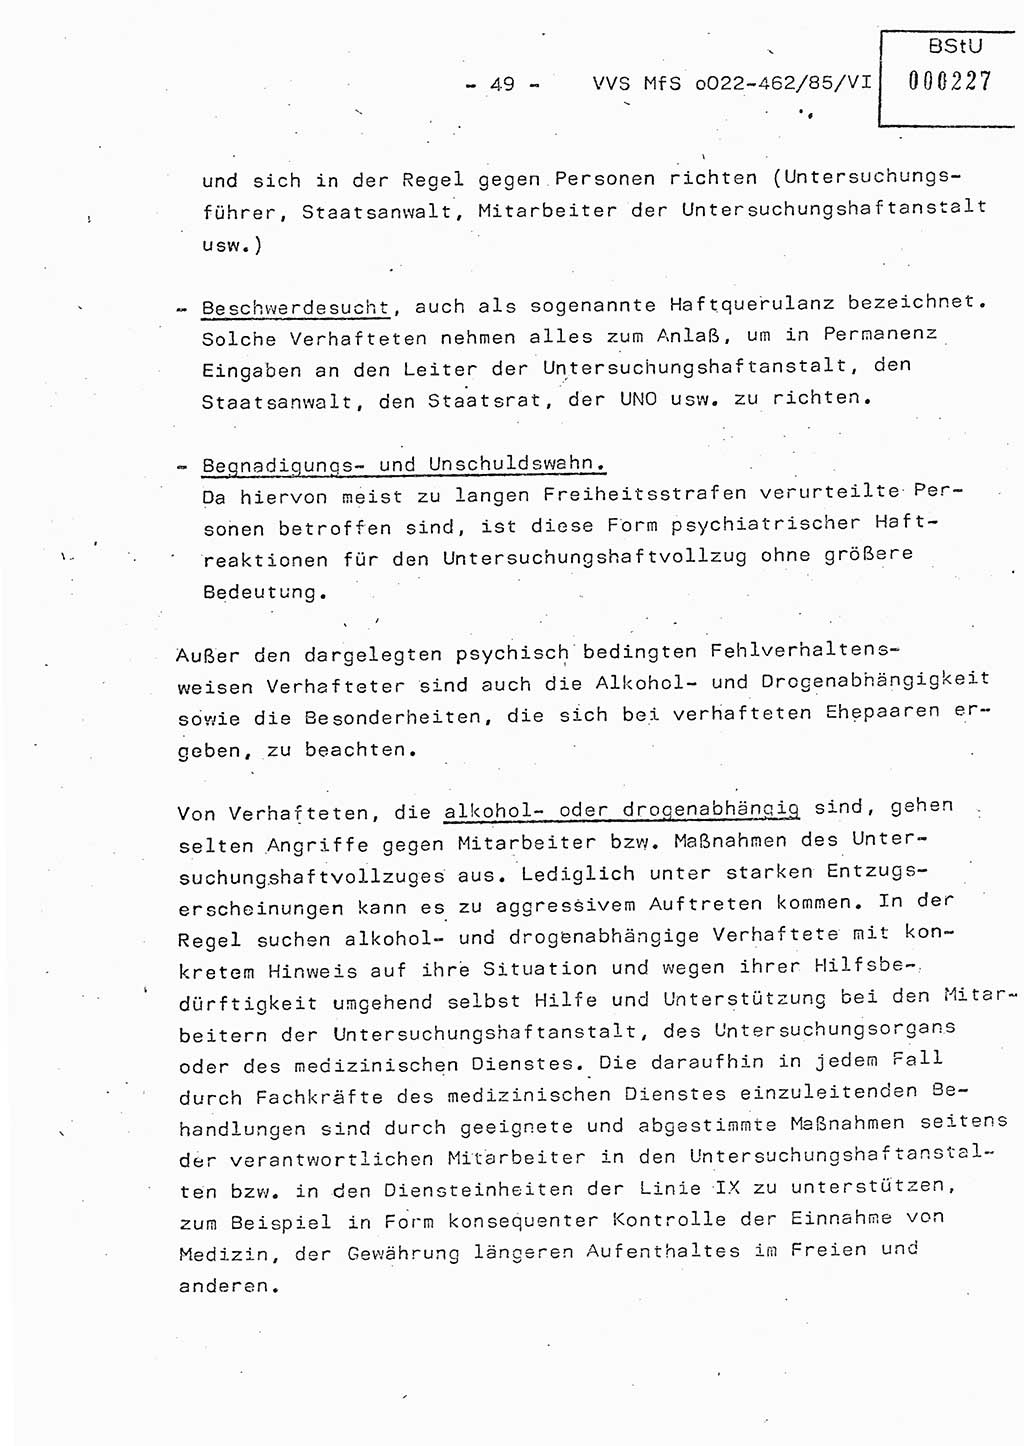 Der Untersuchungshaftvollzug im MfS, Schulungsmaterial Teil Ⅵ, Ministerium für Staatssicherheit [Deutsche Demokratische Republik (DDR)], Abteilung (Abt.) ⅩⅣ, Vertrauliche Verschlußsache (VVS) o022-462/85/Ⅵ, Berlin 1985, Seite 49 (Sch.-Mat. Ⅵ MfS DDR Abt. ⅩⅣ VVS o022-462/85/Ⅵ 1985, S. 49)